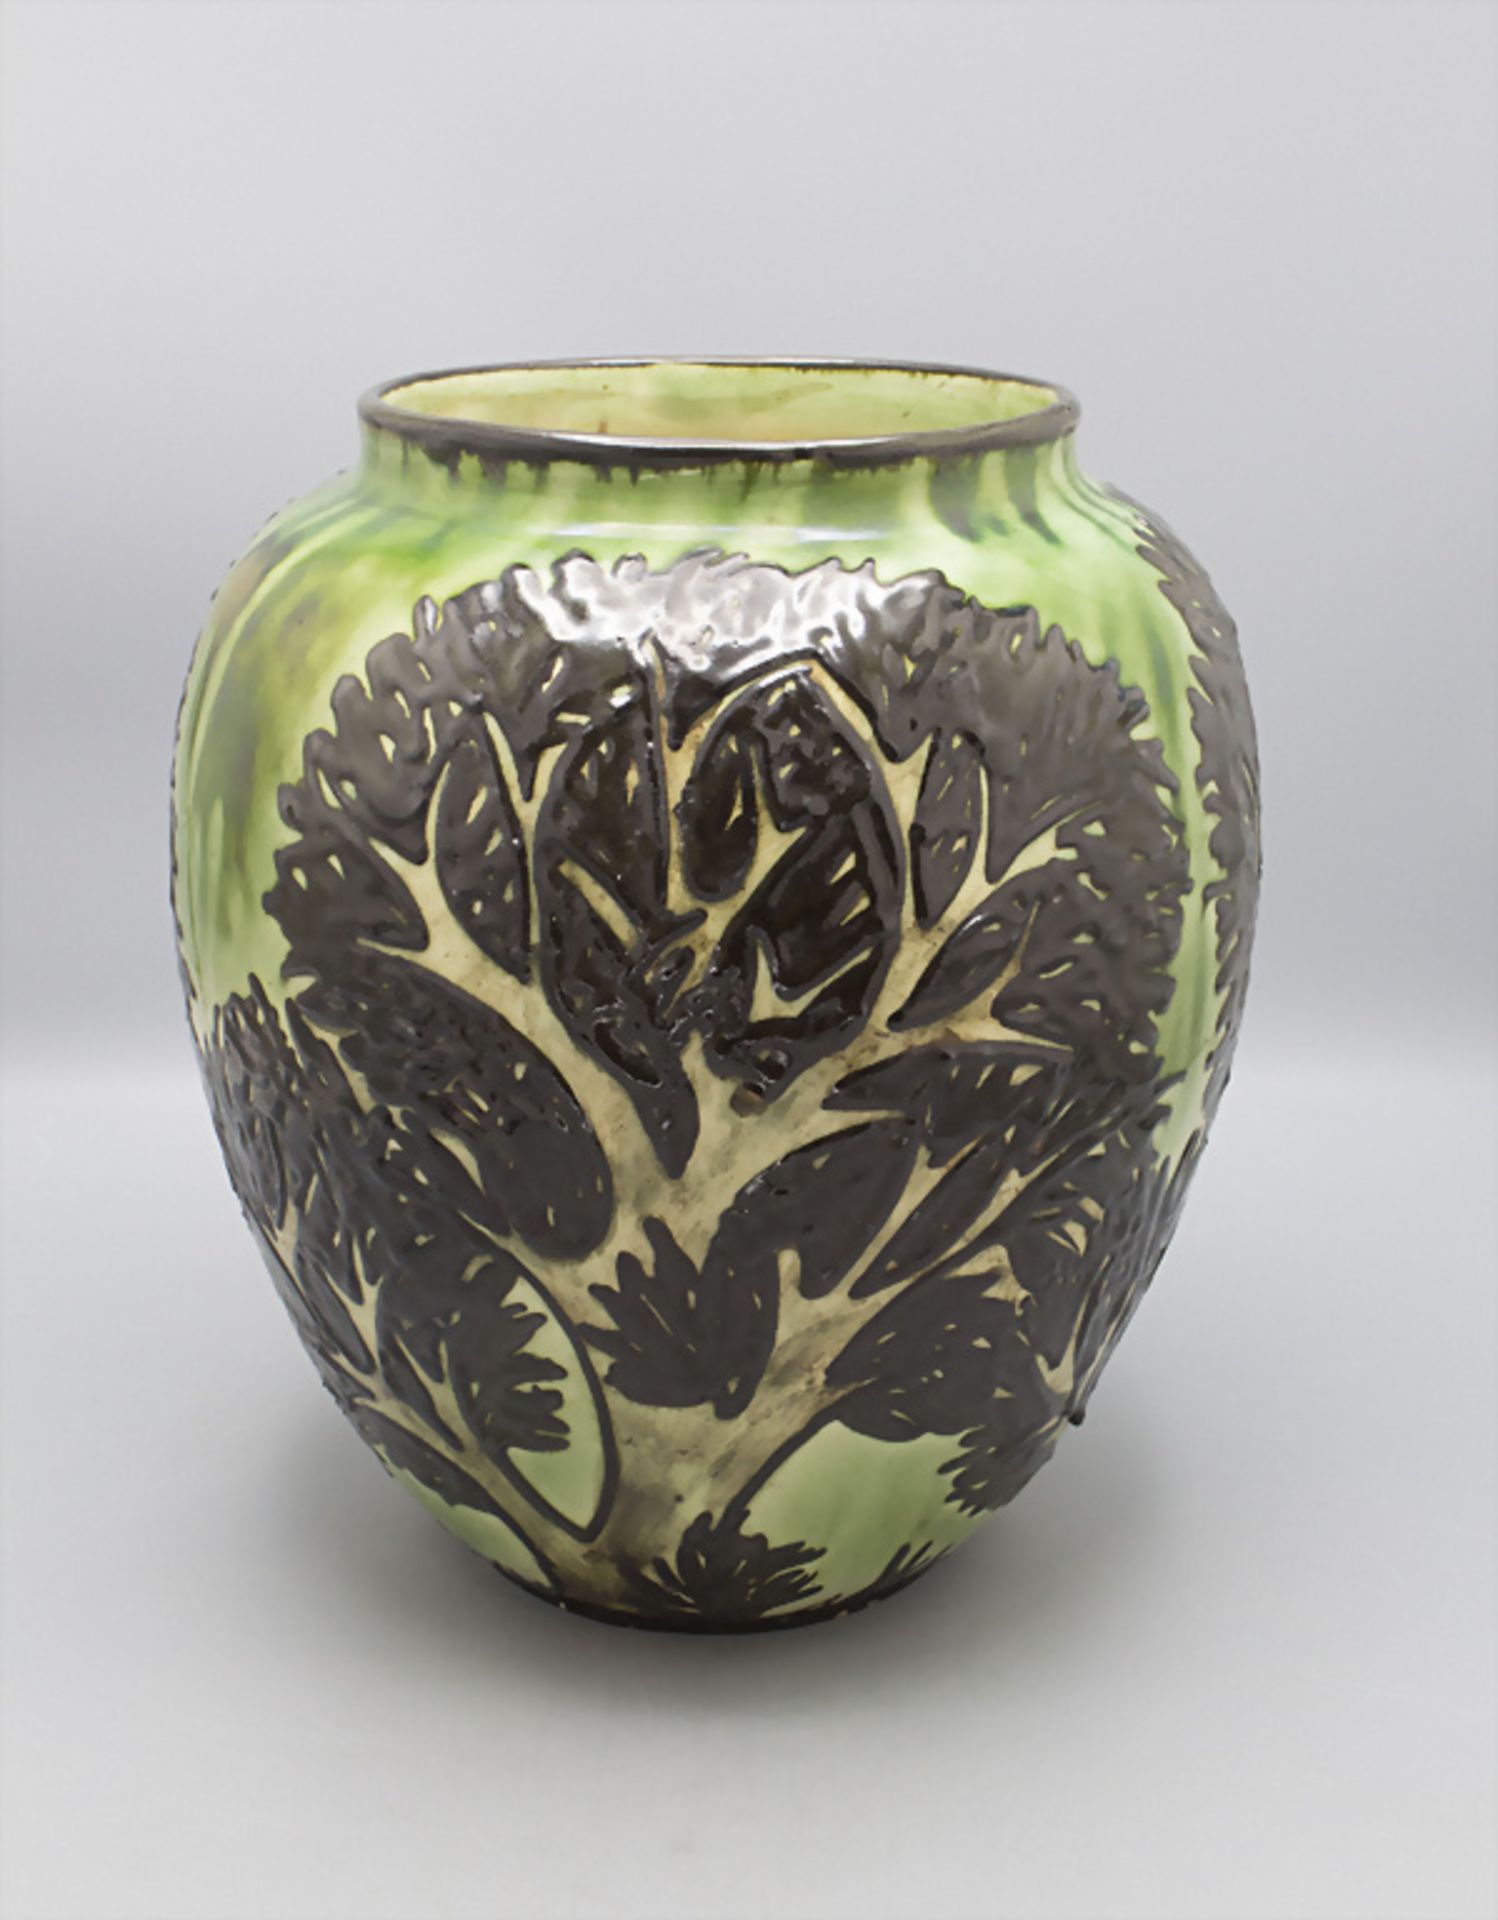 Jugendstil Majolika Vase 'Bäume' / An Art Nouveau majolica vase 'Trees', Max Laeuger, ...